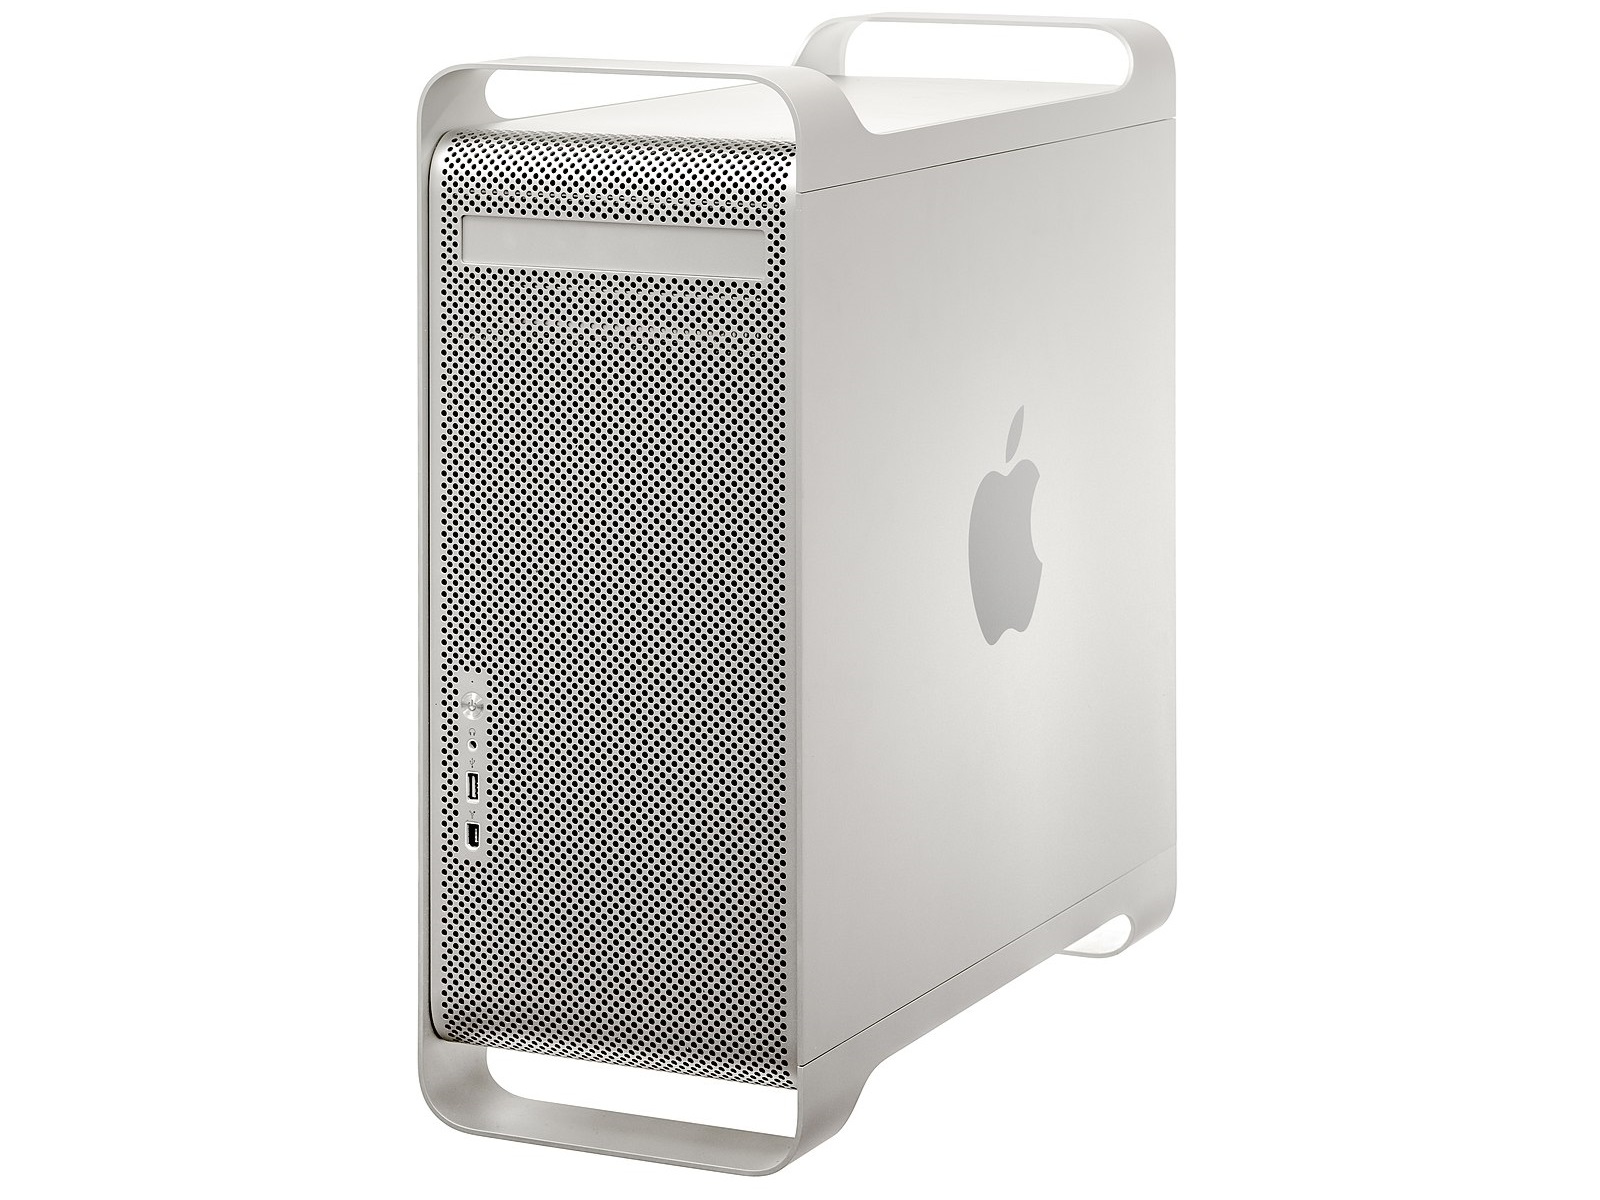 Il Power Mac G5, l'ultimo Mac di Apple realizzato su piattaforma PowerPC